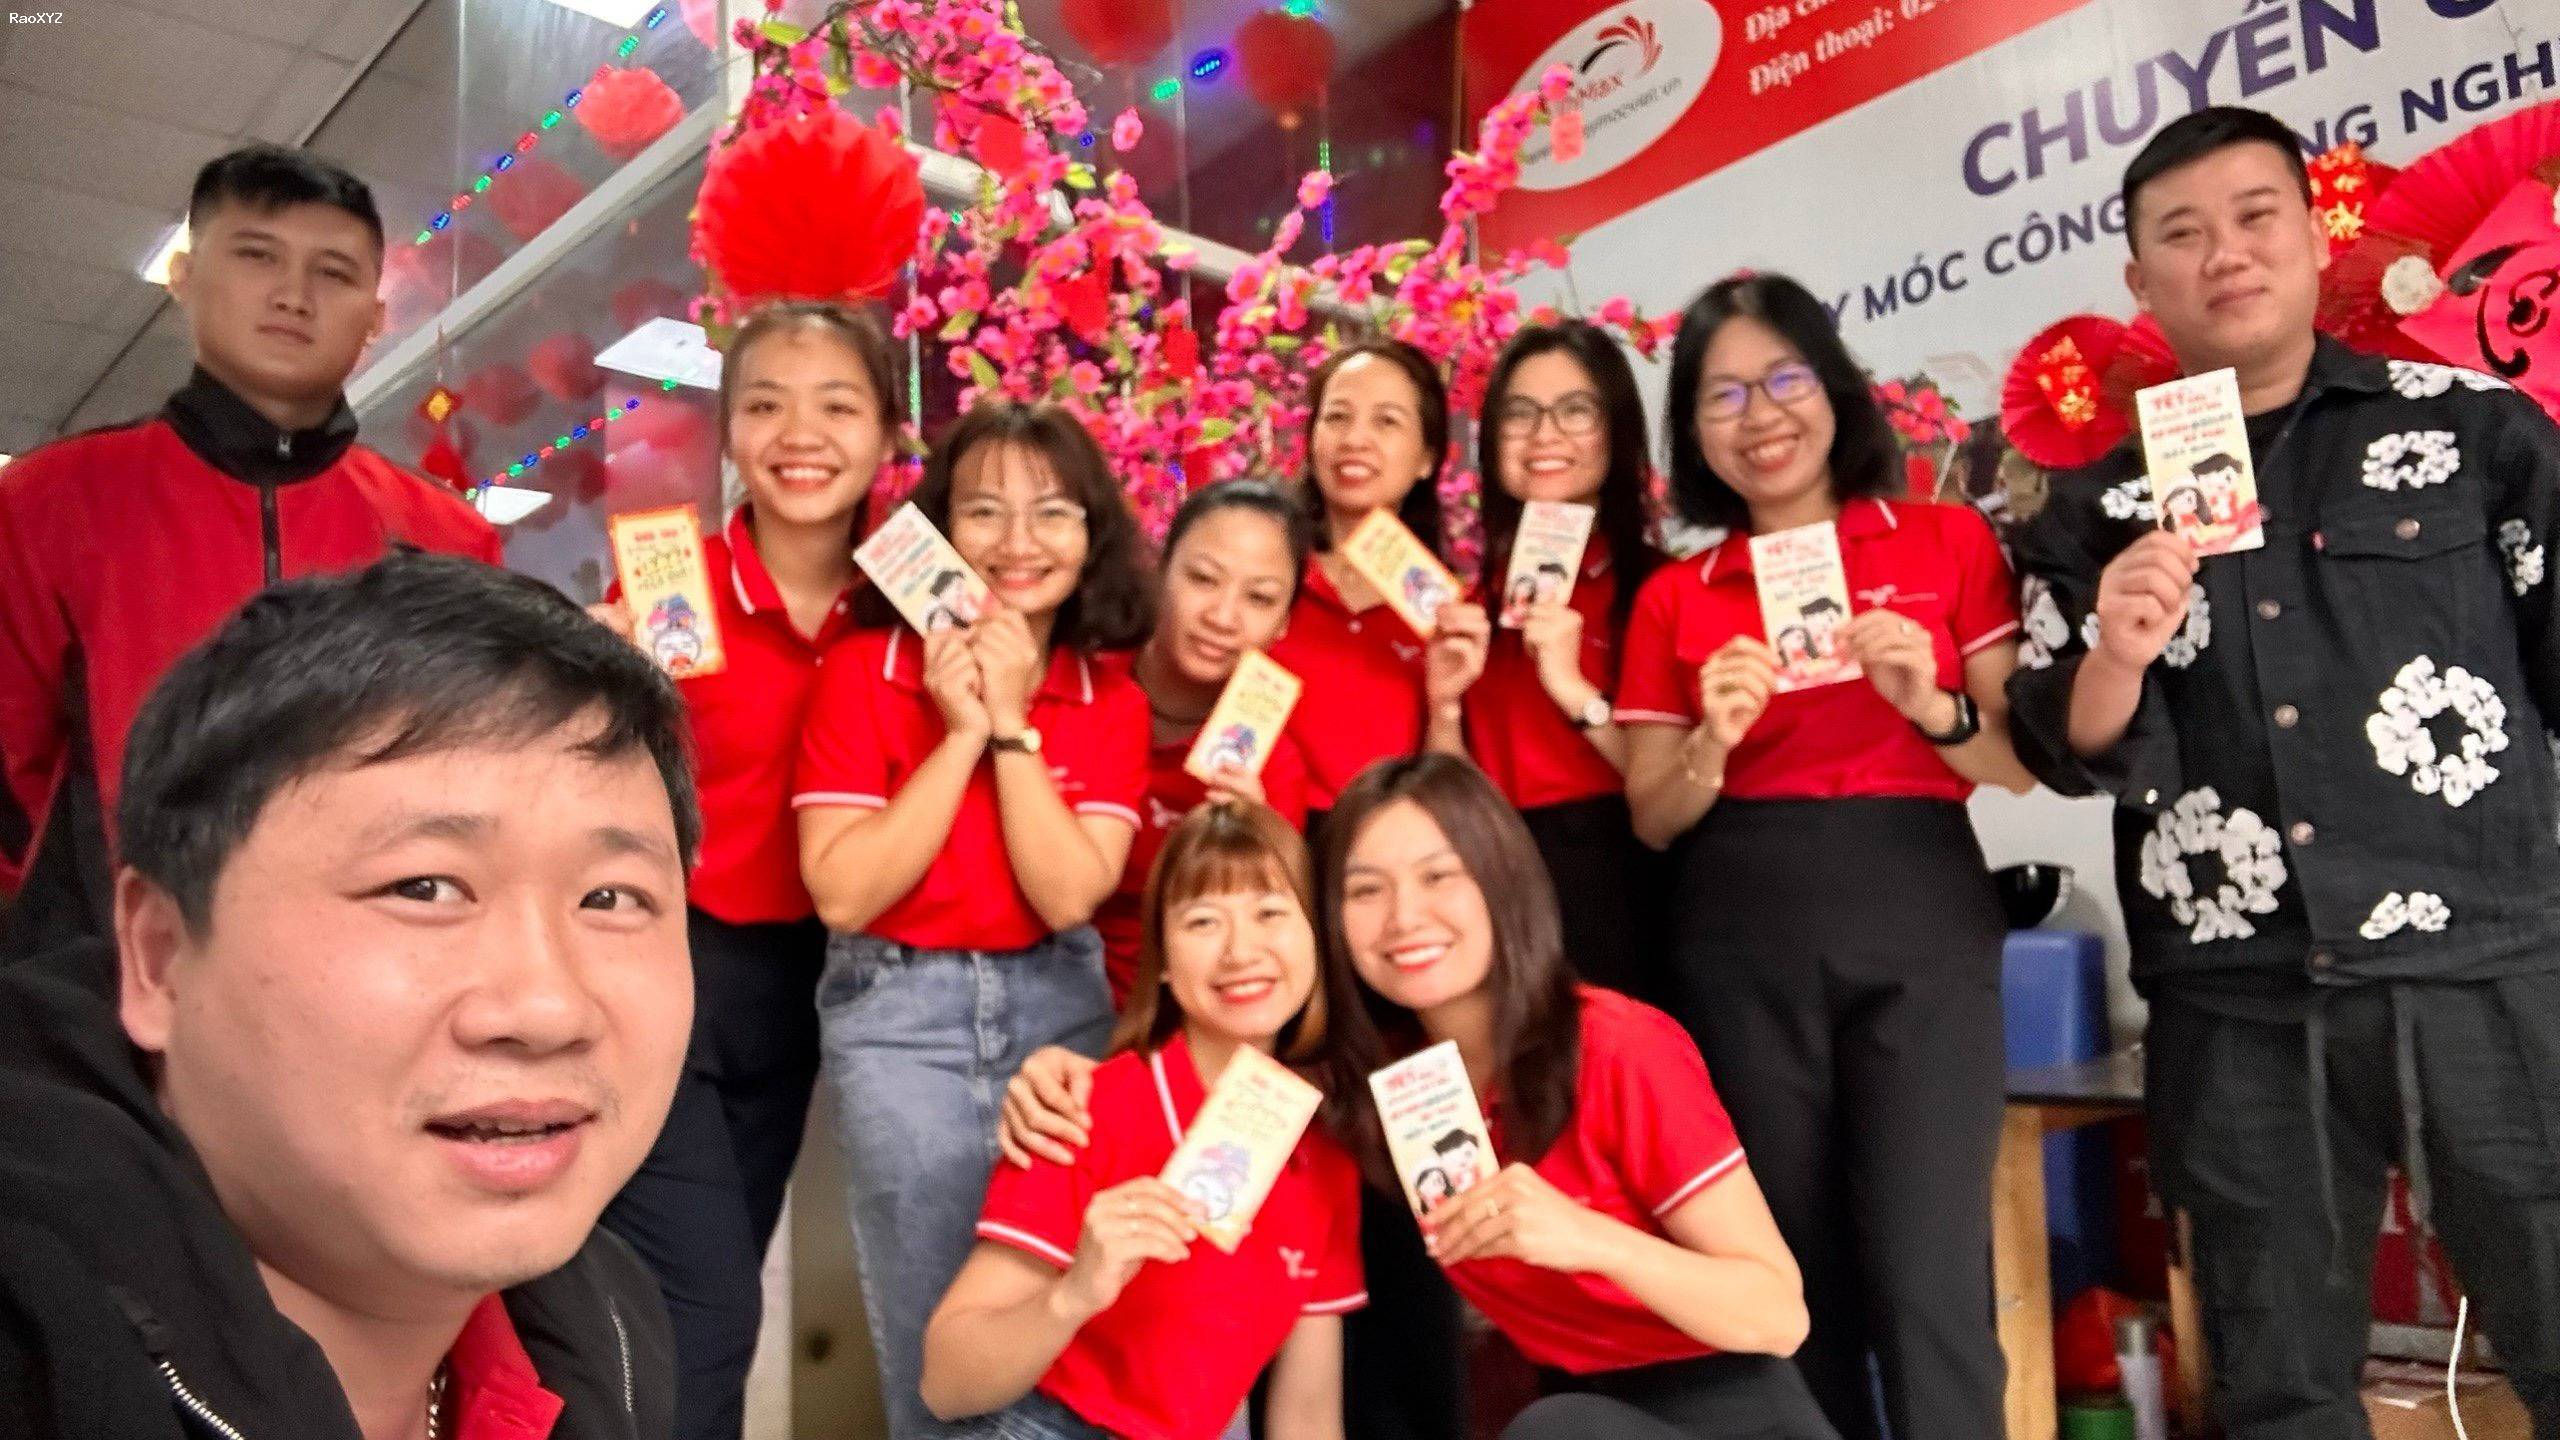 Tìm đồng đội | Tuyển dụng nhân viên kinh doanh đi làm luôn tại 258 Phạm Văn Đồng - Hà Nội